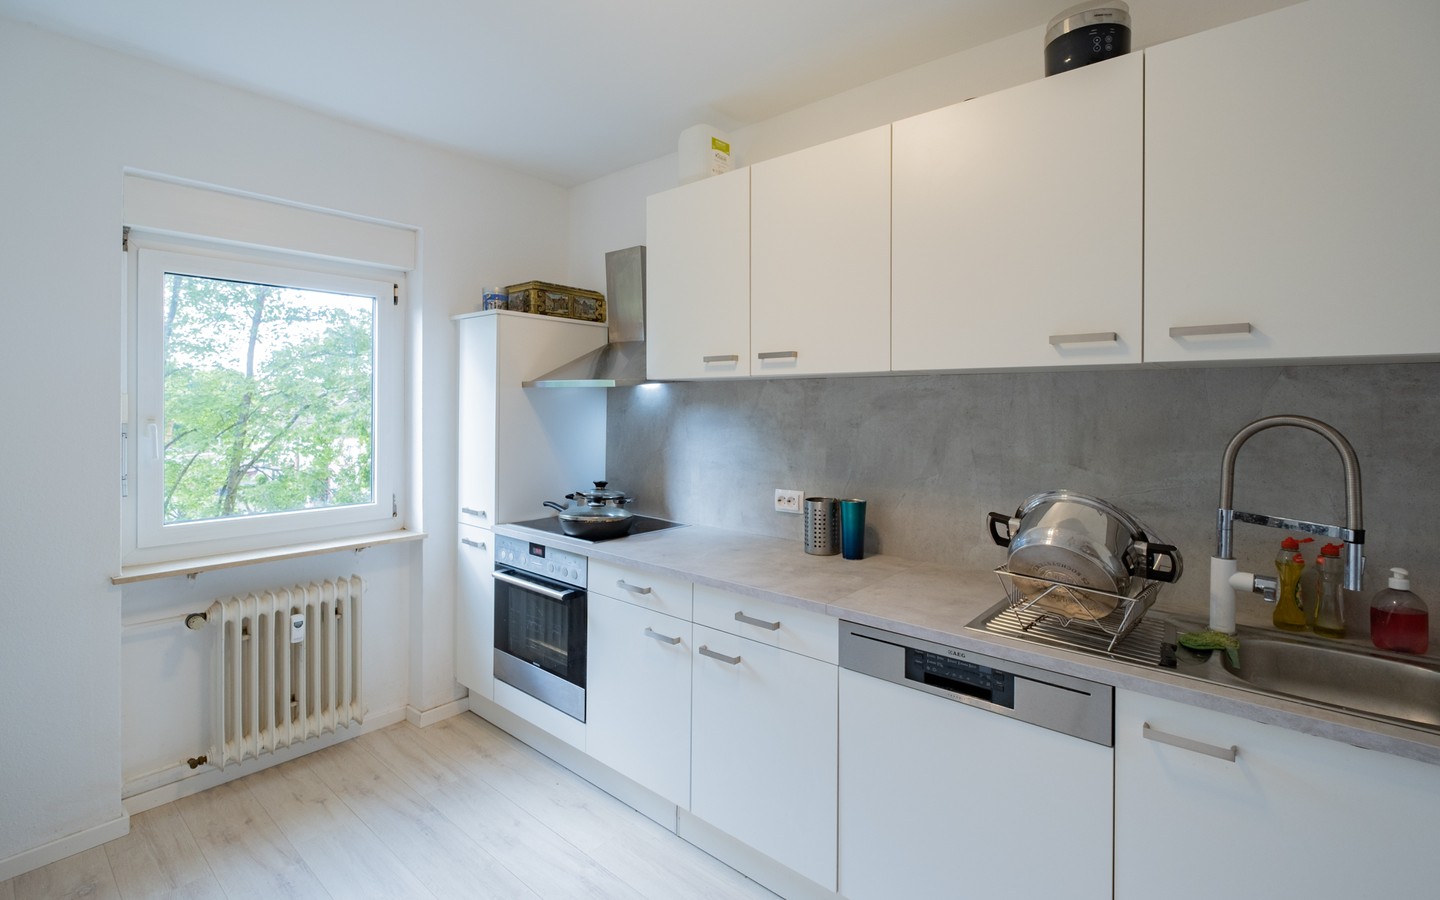 Küche - Leimen-St.Ilgen: helle 3-Zimmer-Wohnung mit Loggia, Keller und überdachtem PKW-Stellplatz